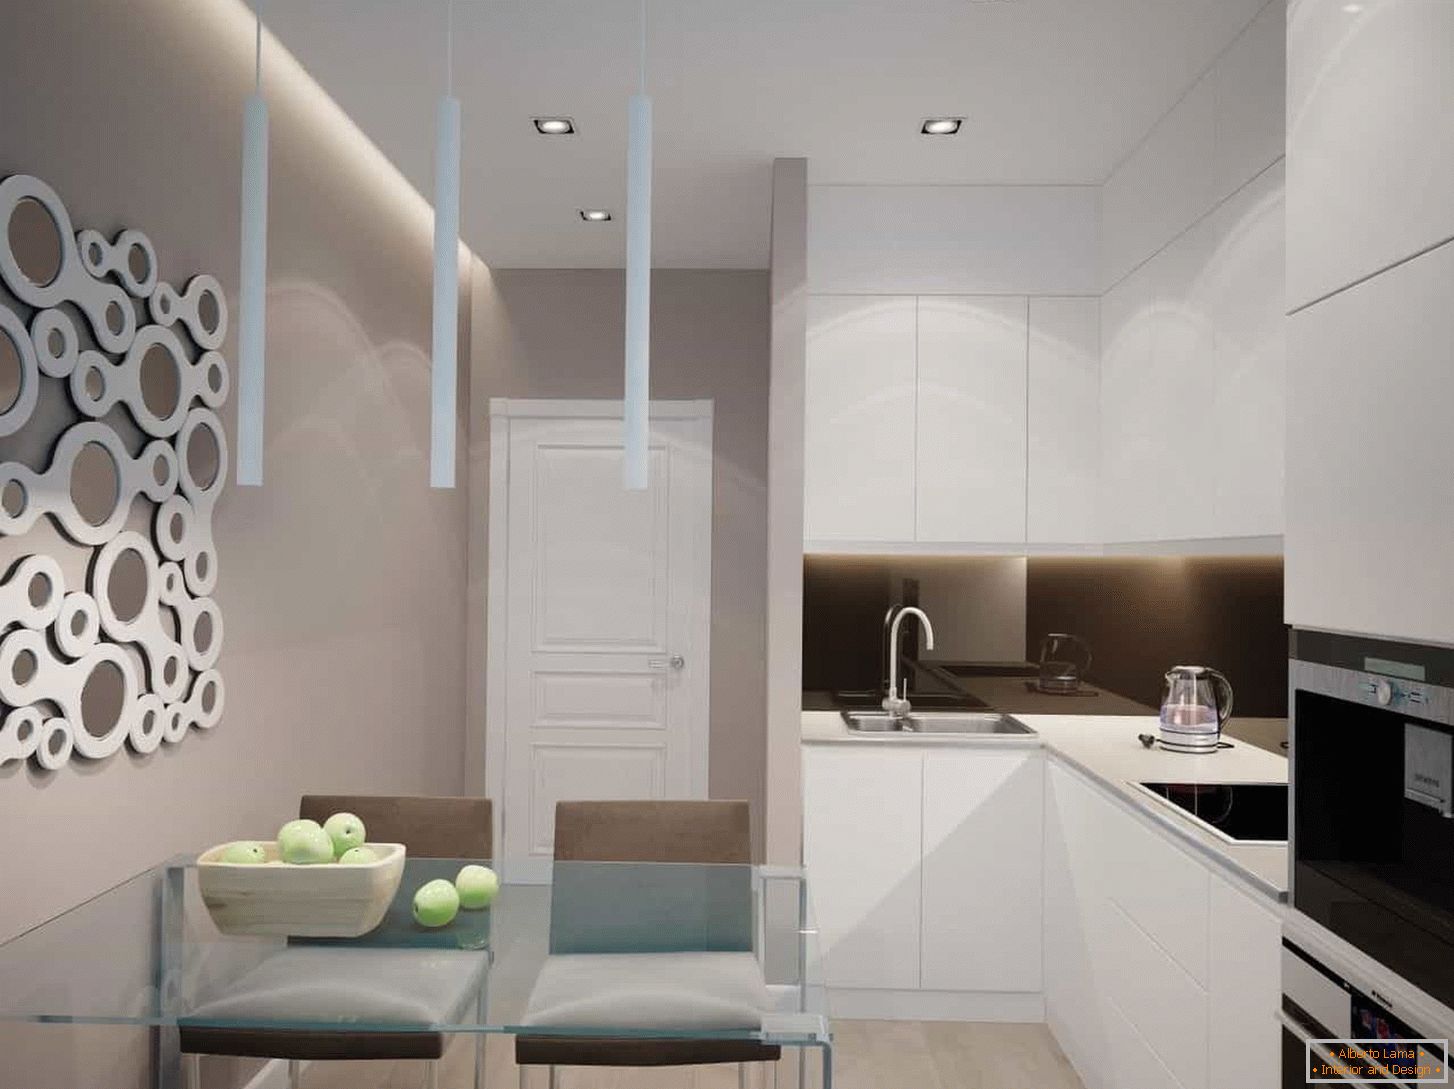 Cozinha branca em estilo moderno com eletrodomésticos embutidos